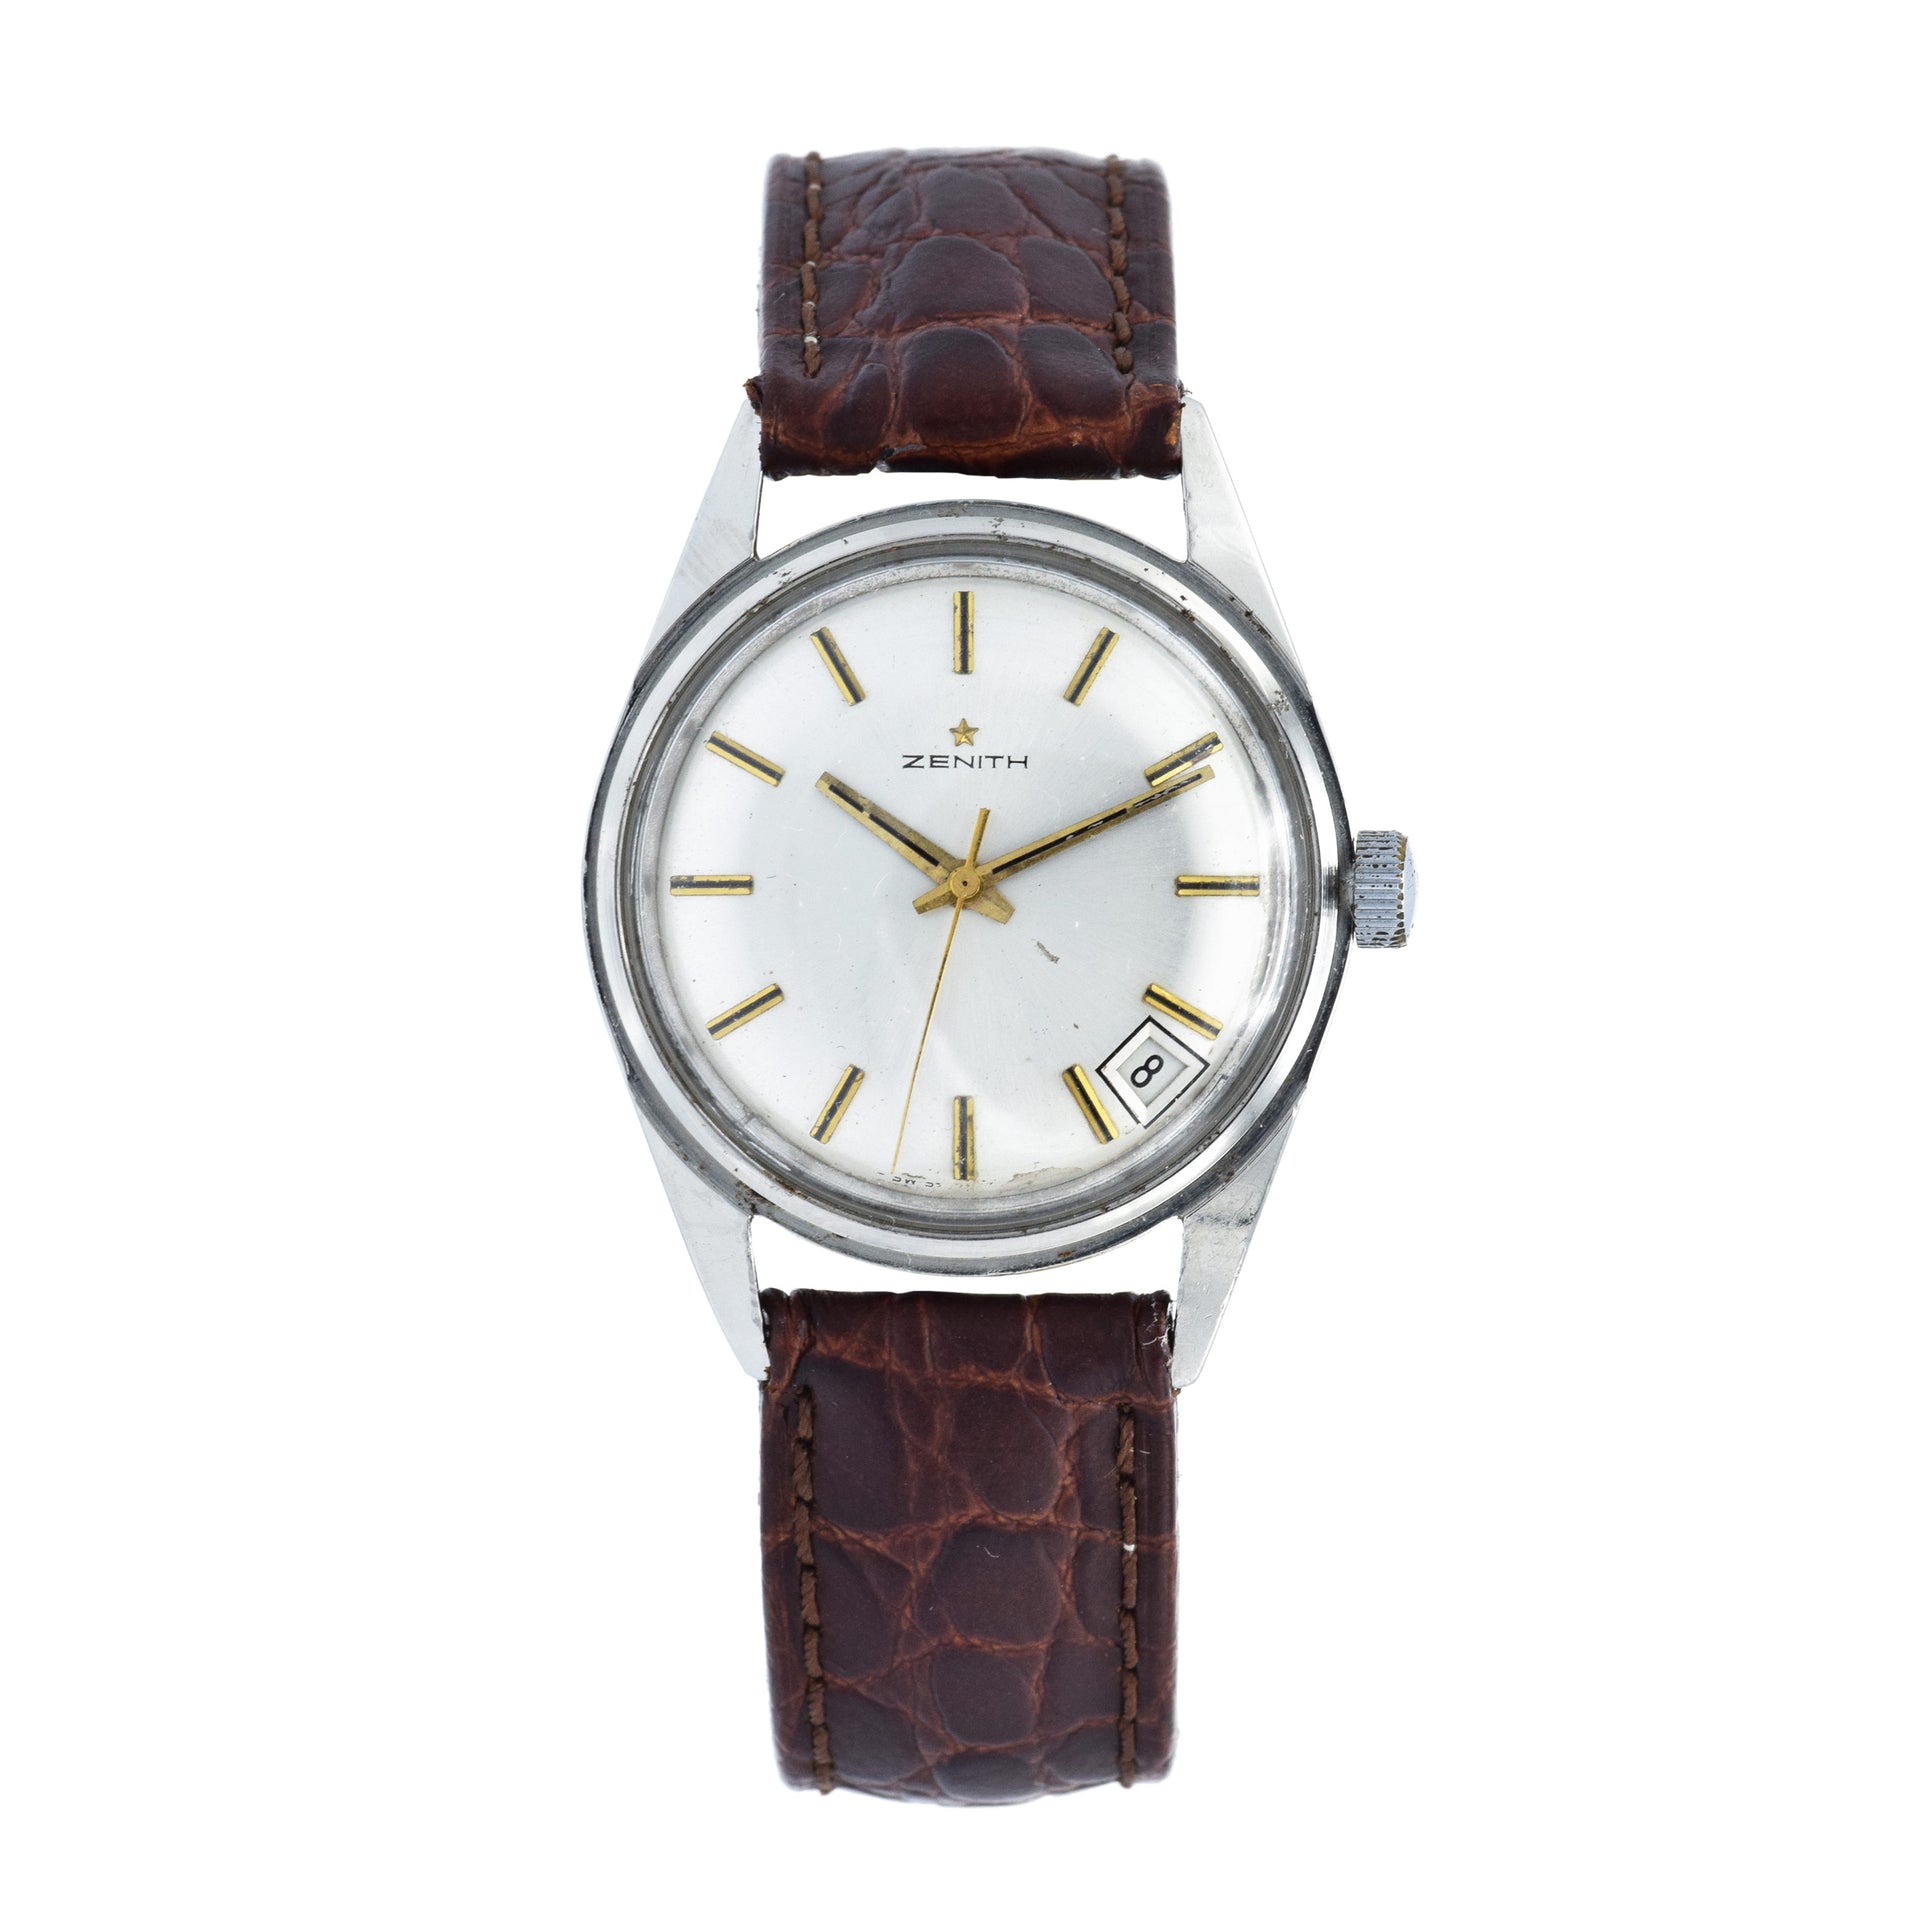 Vintage 1960s Zenith Watch